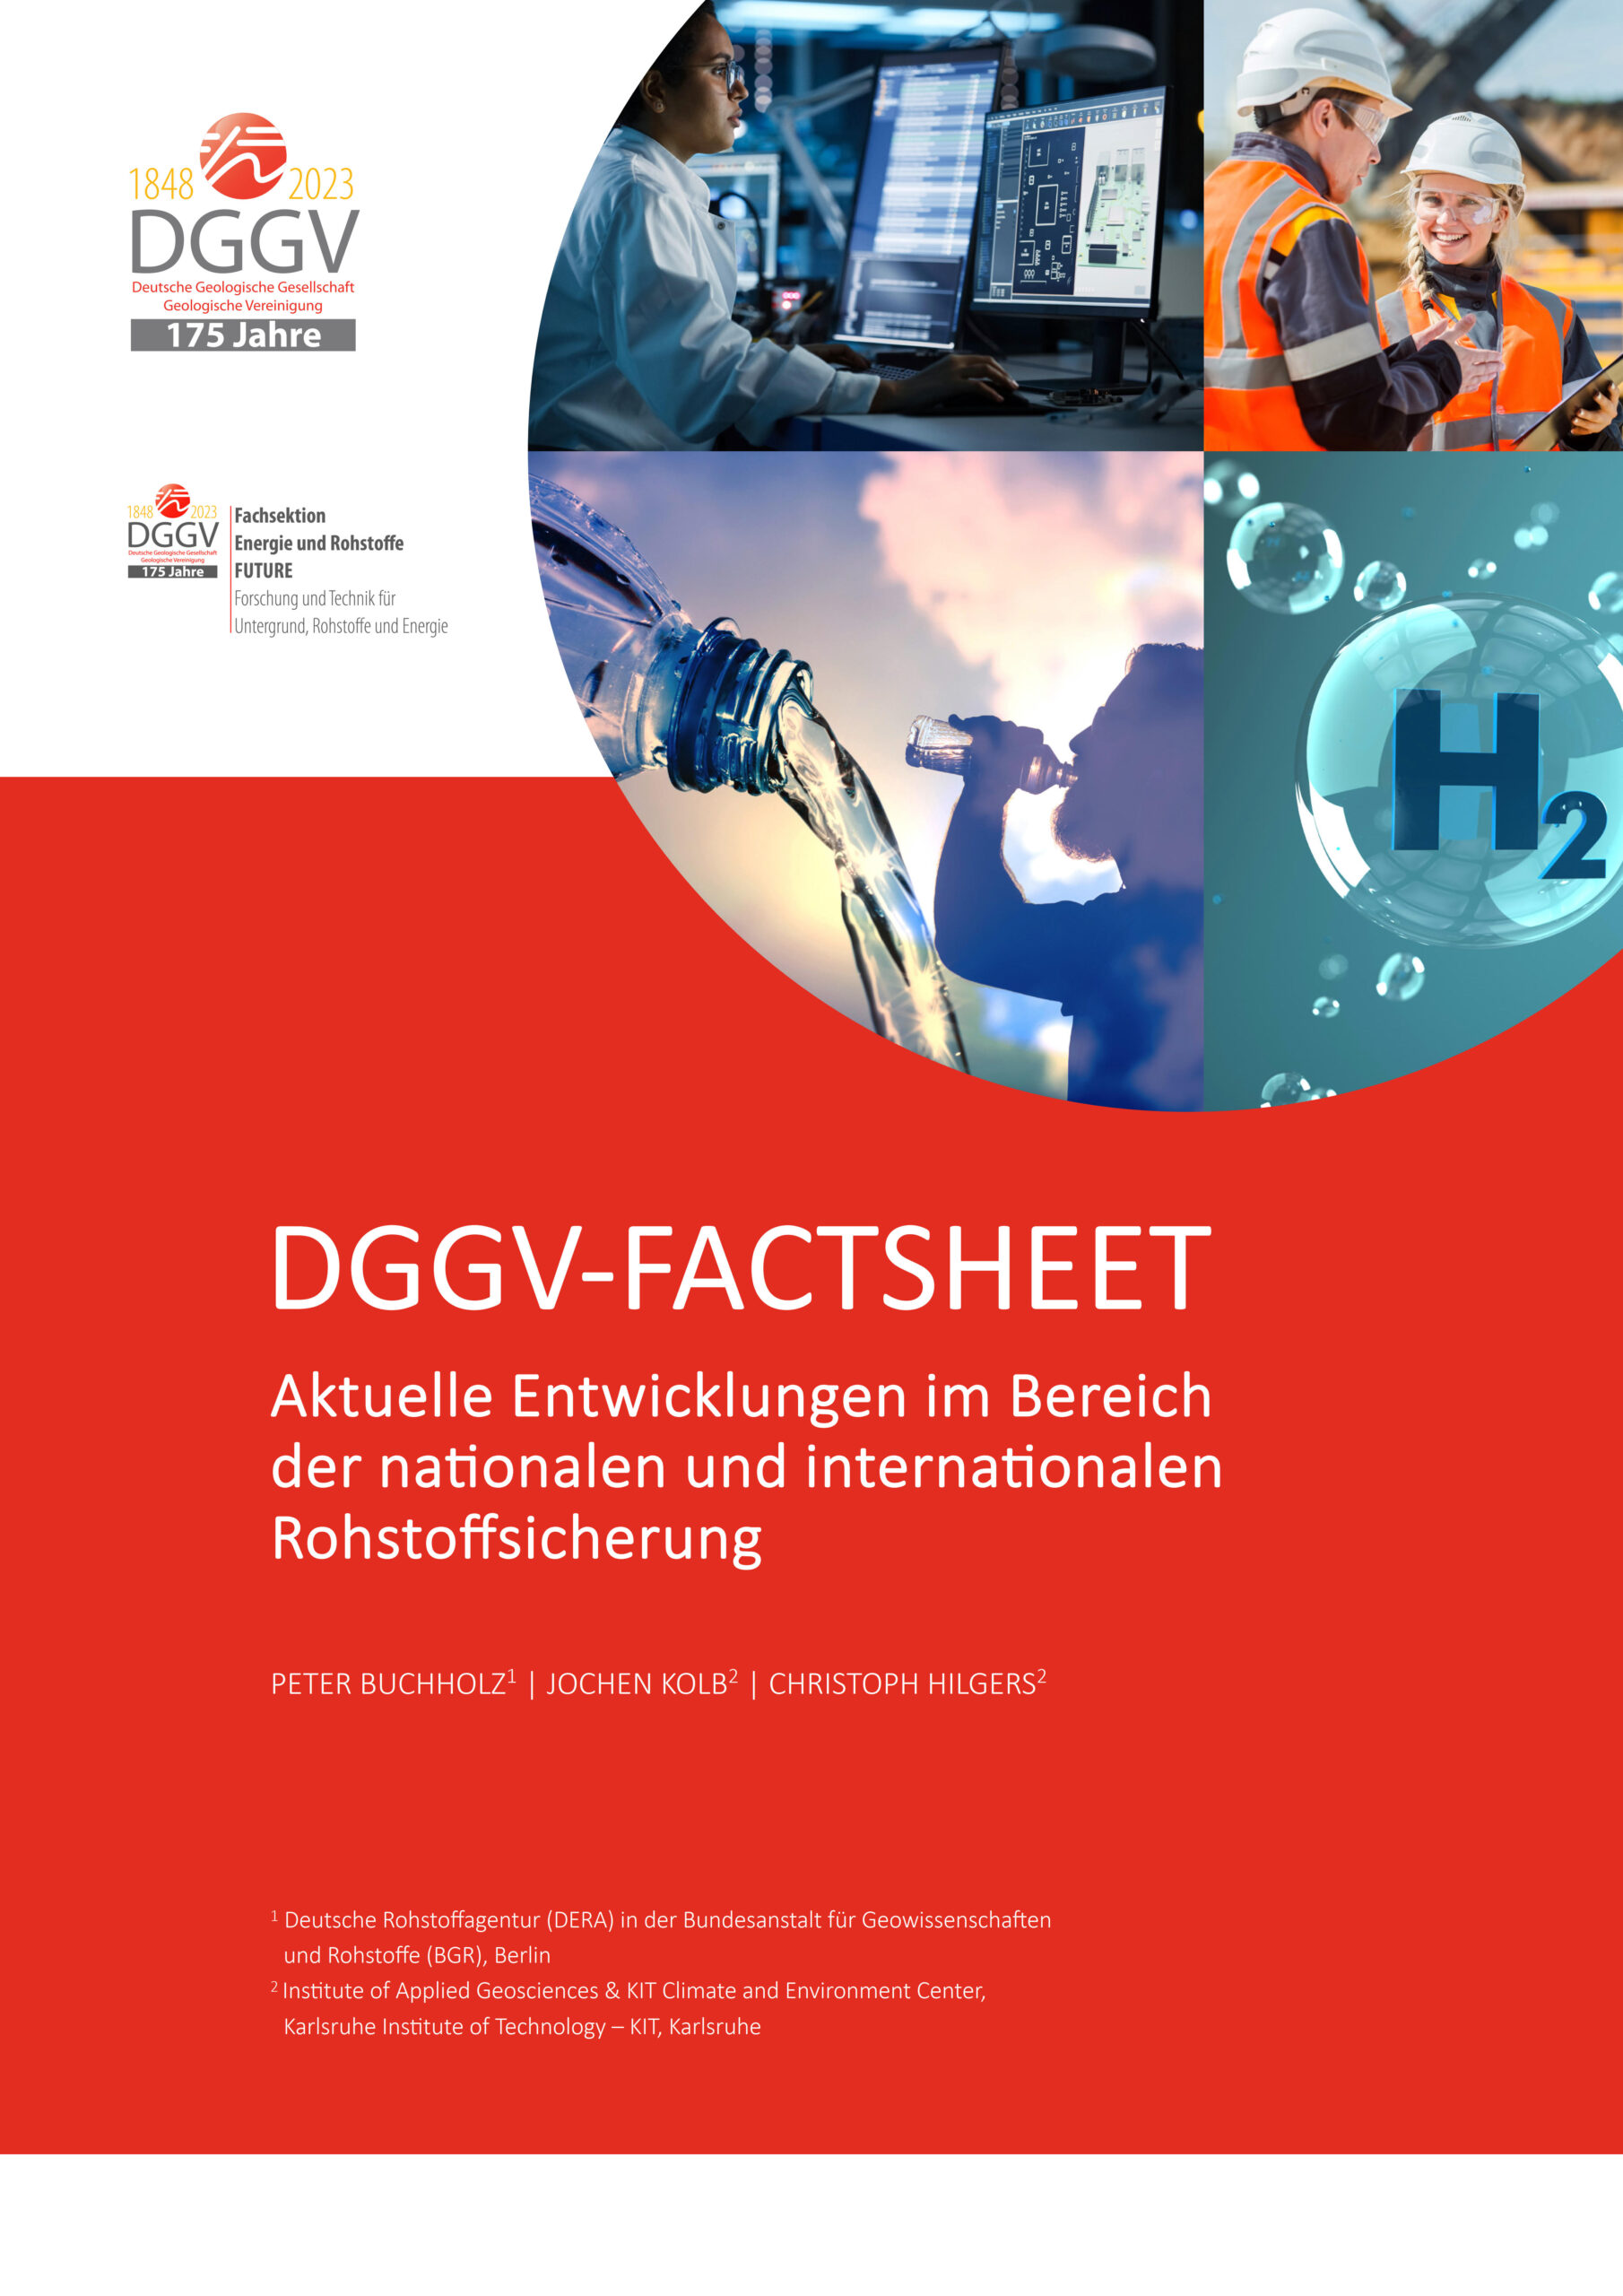 DGGV-Factsheet zur Rohstoff-sicherung ist online